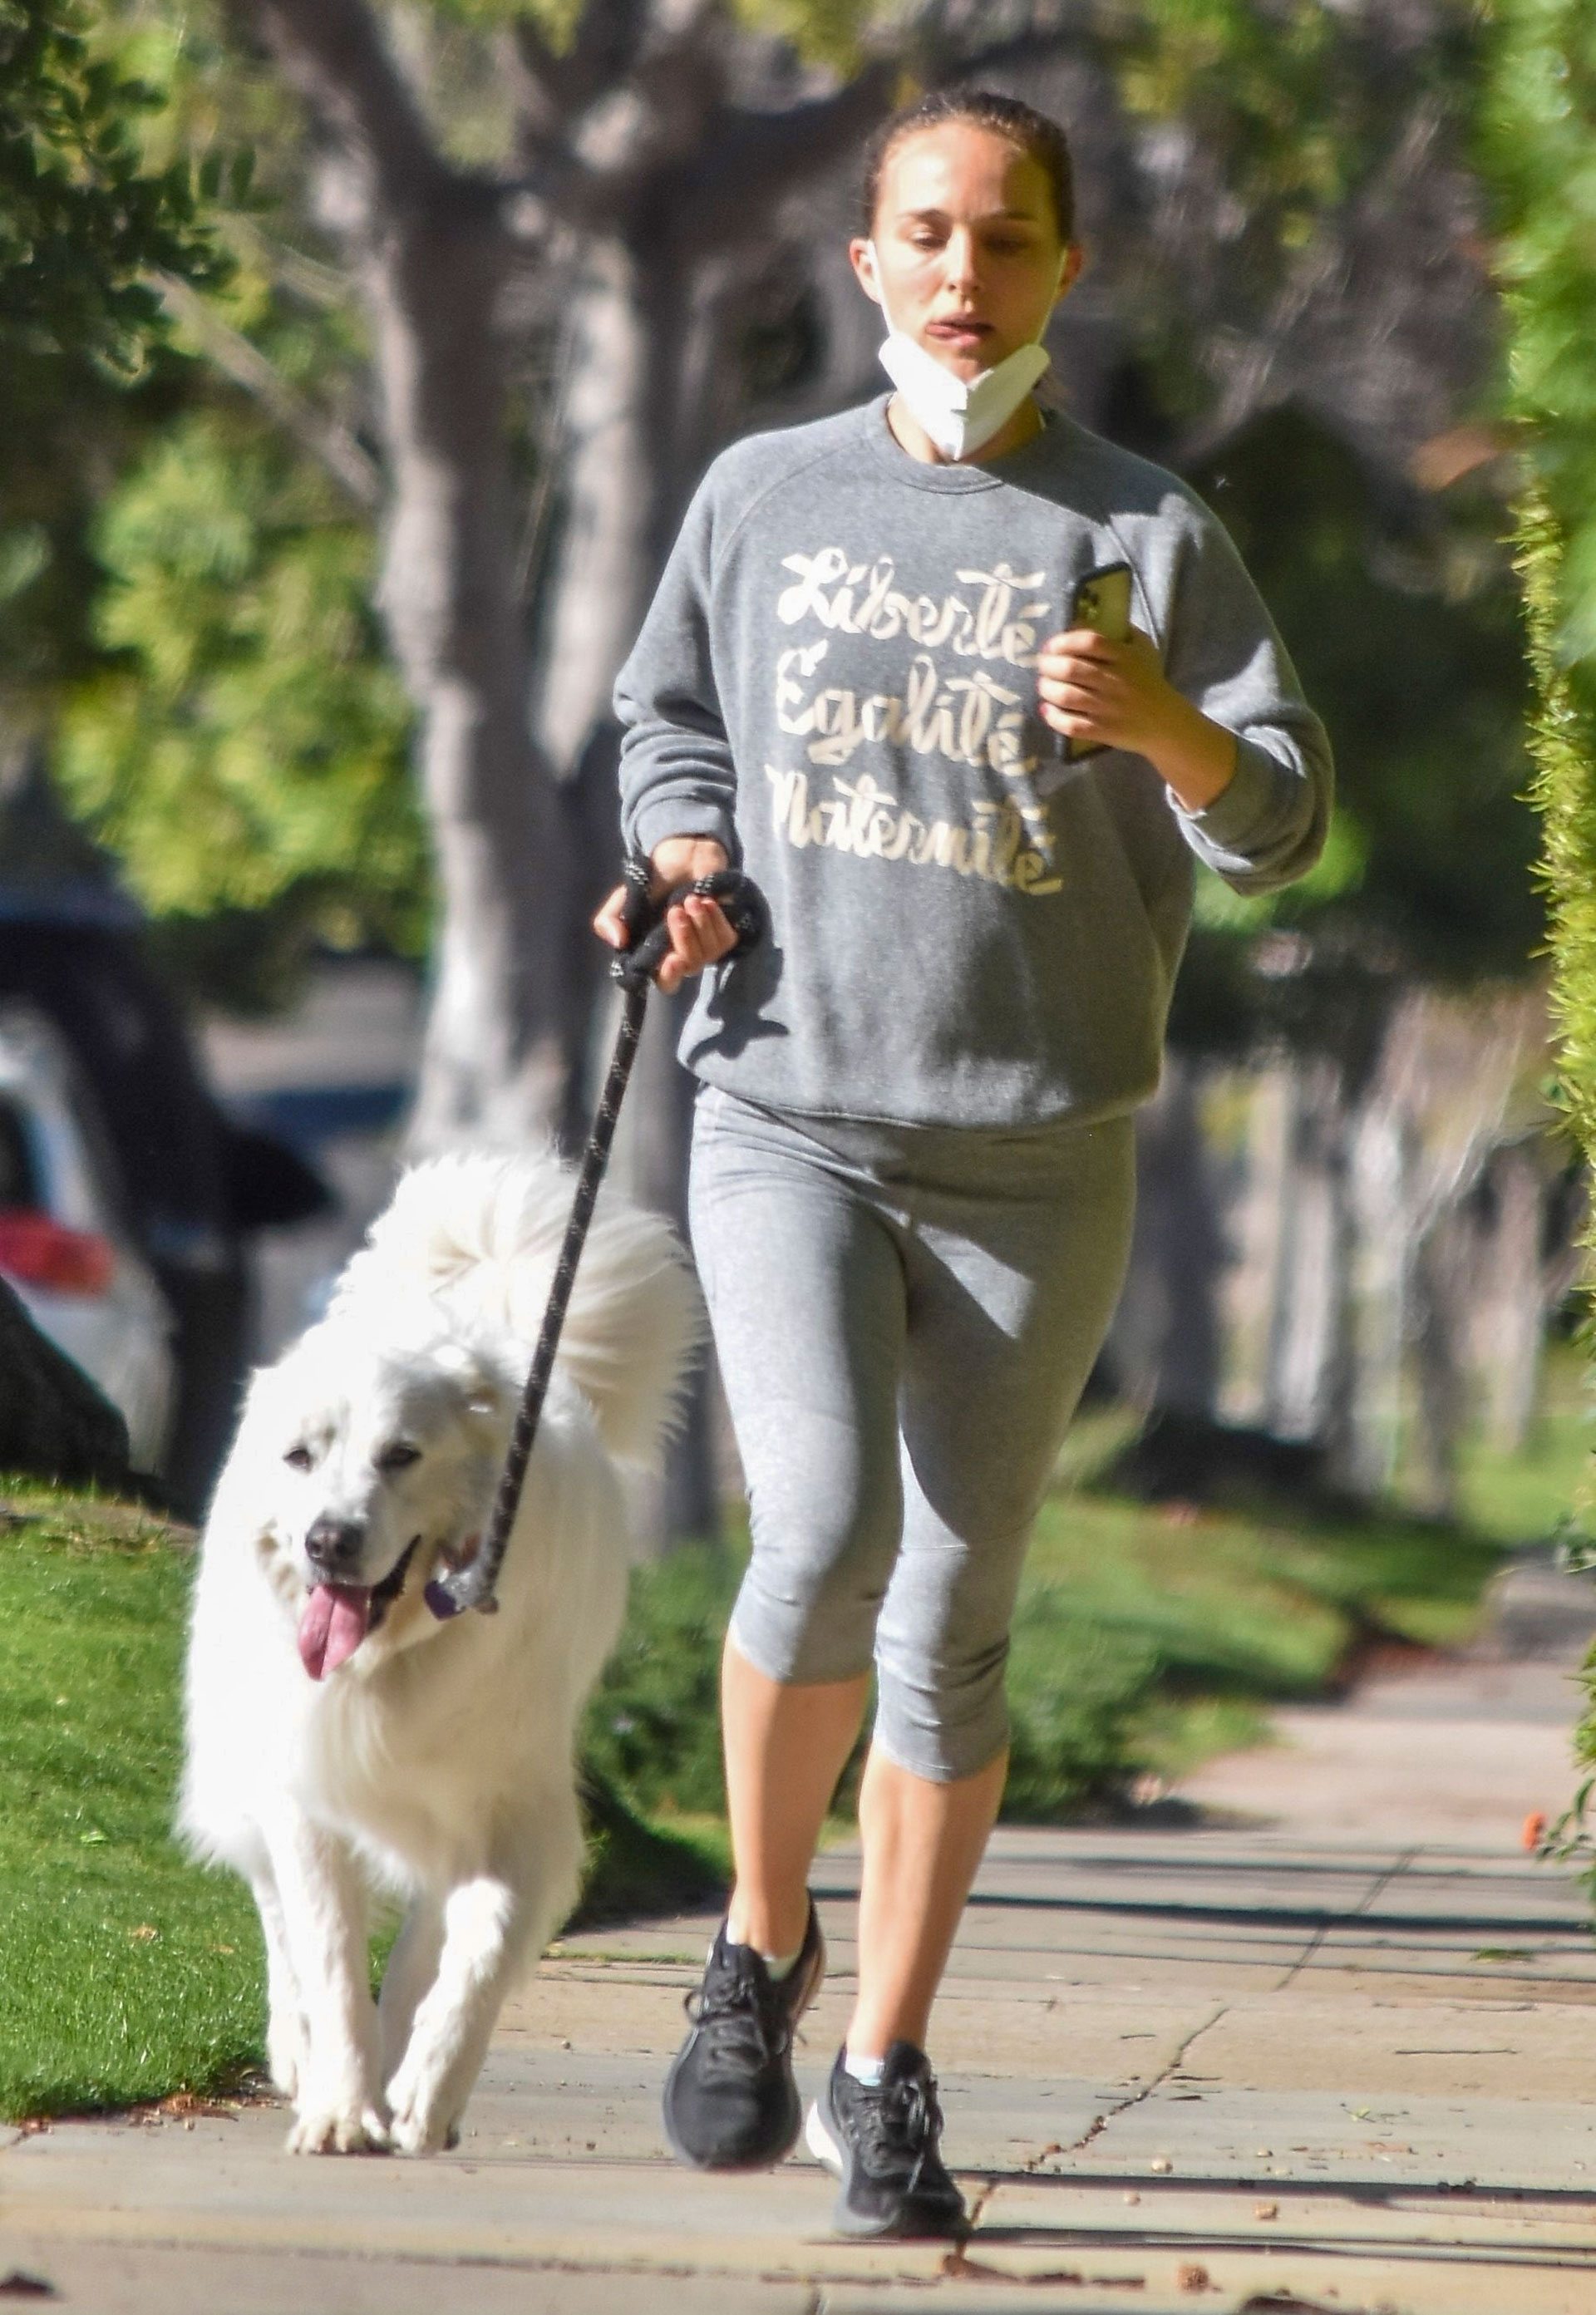 Día de entrenamiento. Natalie Portman salió a hacer deporte por las calles de Los Feliz, California. Y aprovechó la oportunidad para sacar a su perro, con quien corrió a la par mientras lo llevaba de la correa